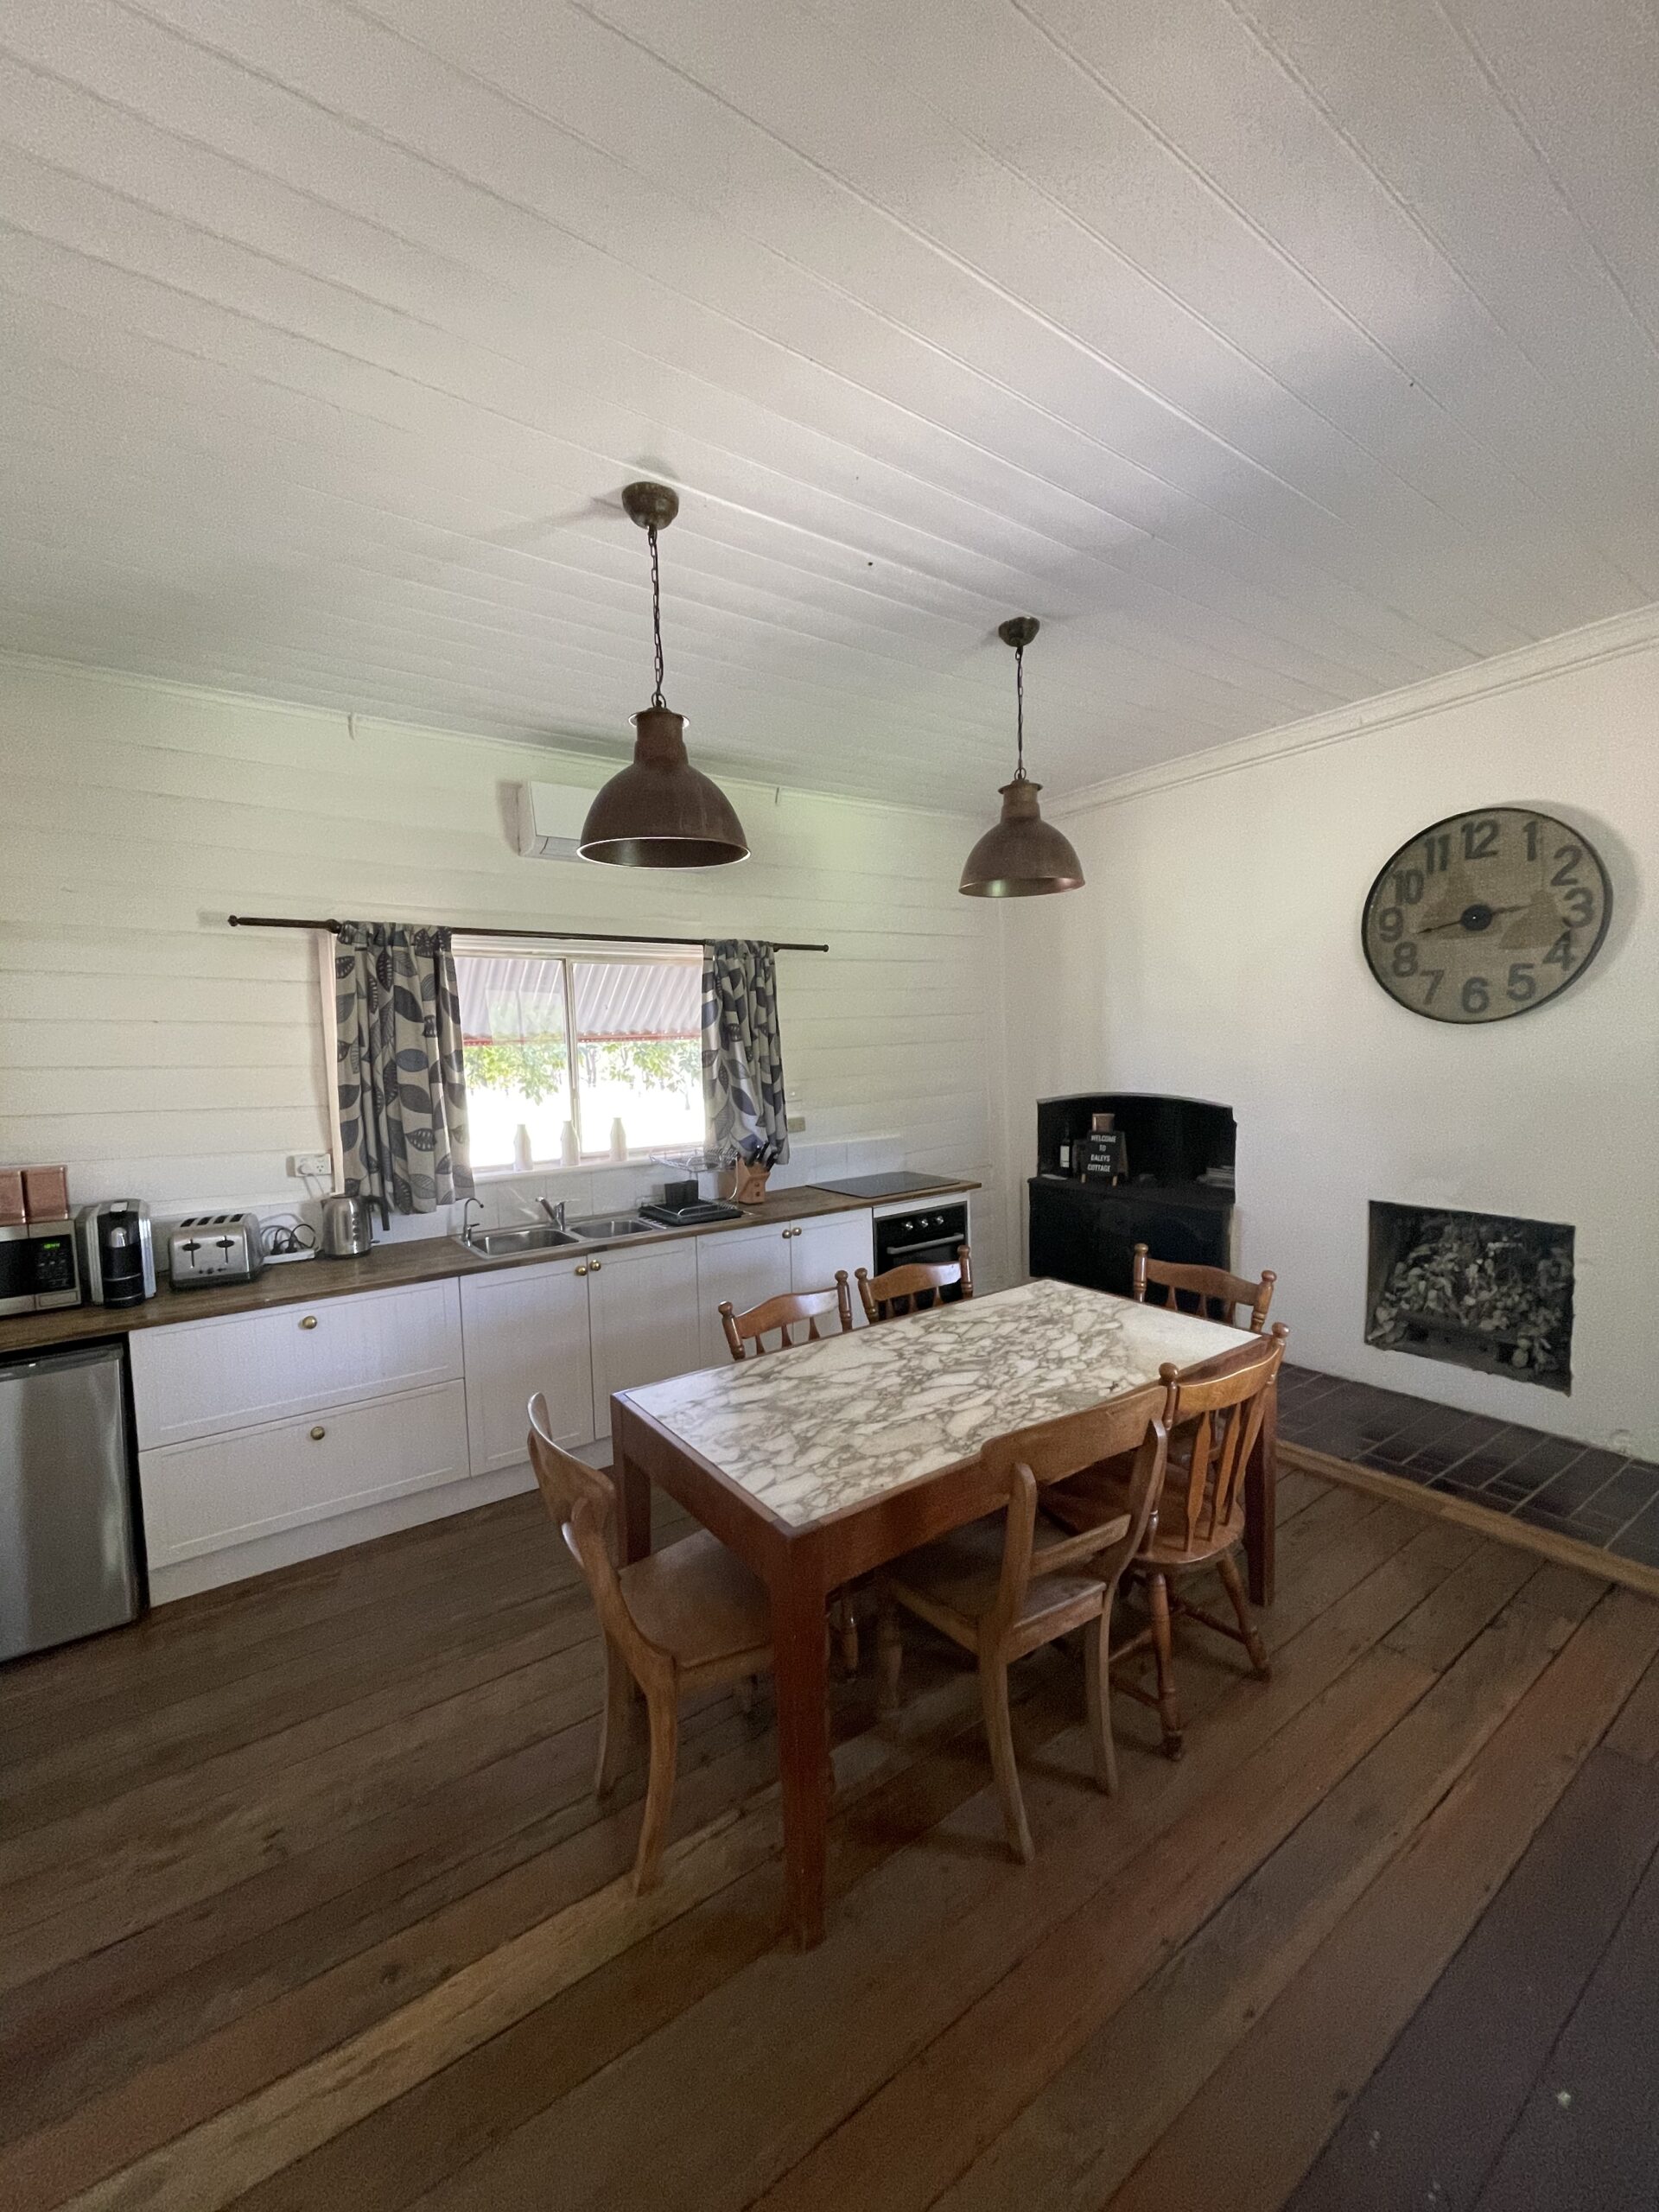 Daleys cottage farm stay cottage kitchen